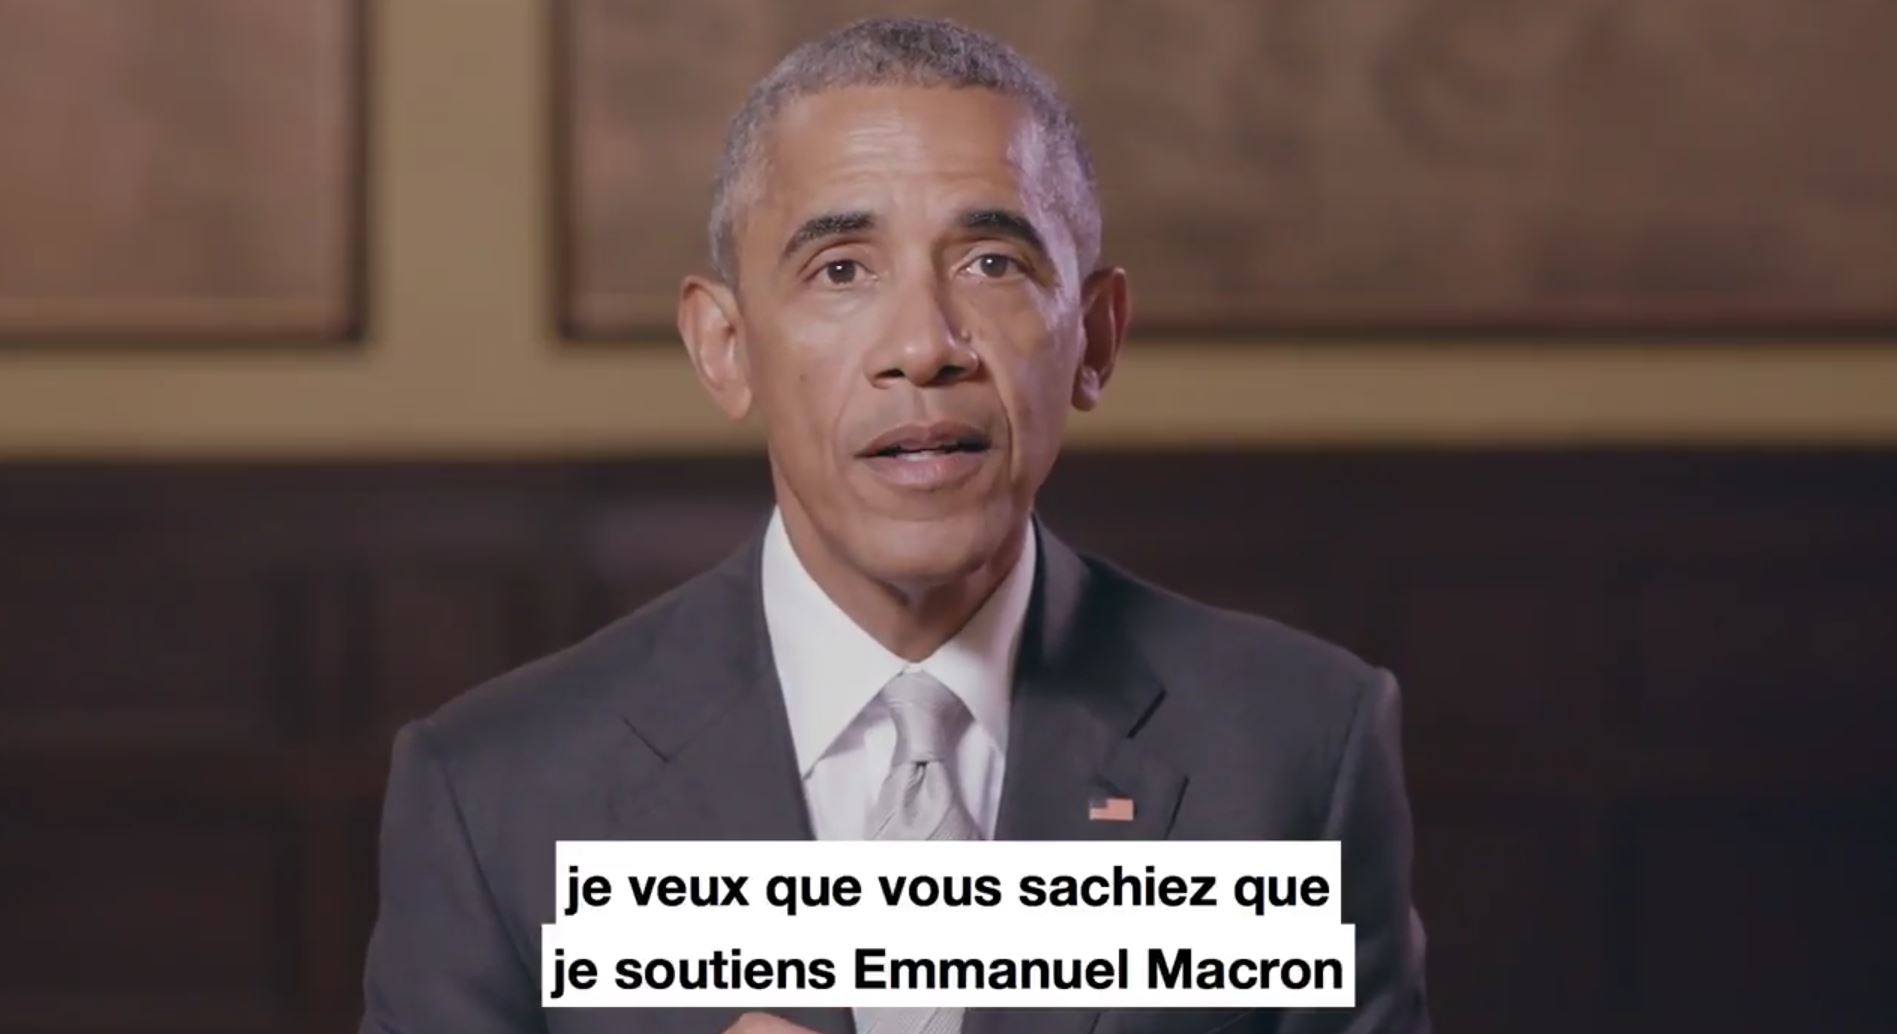 Barack Obama a apporté son soutien à Macron via Twitter.